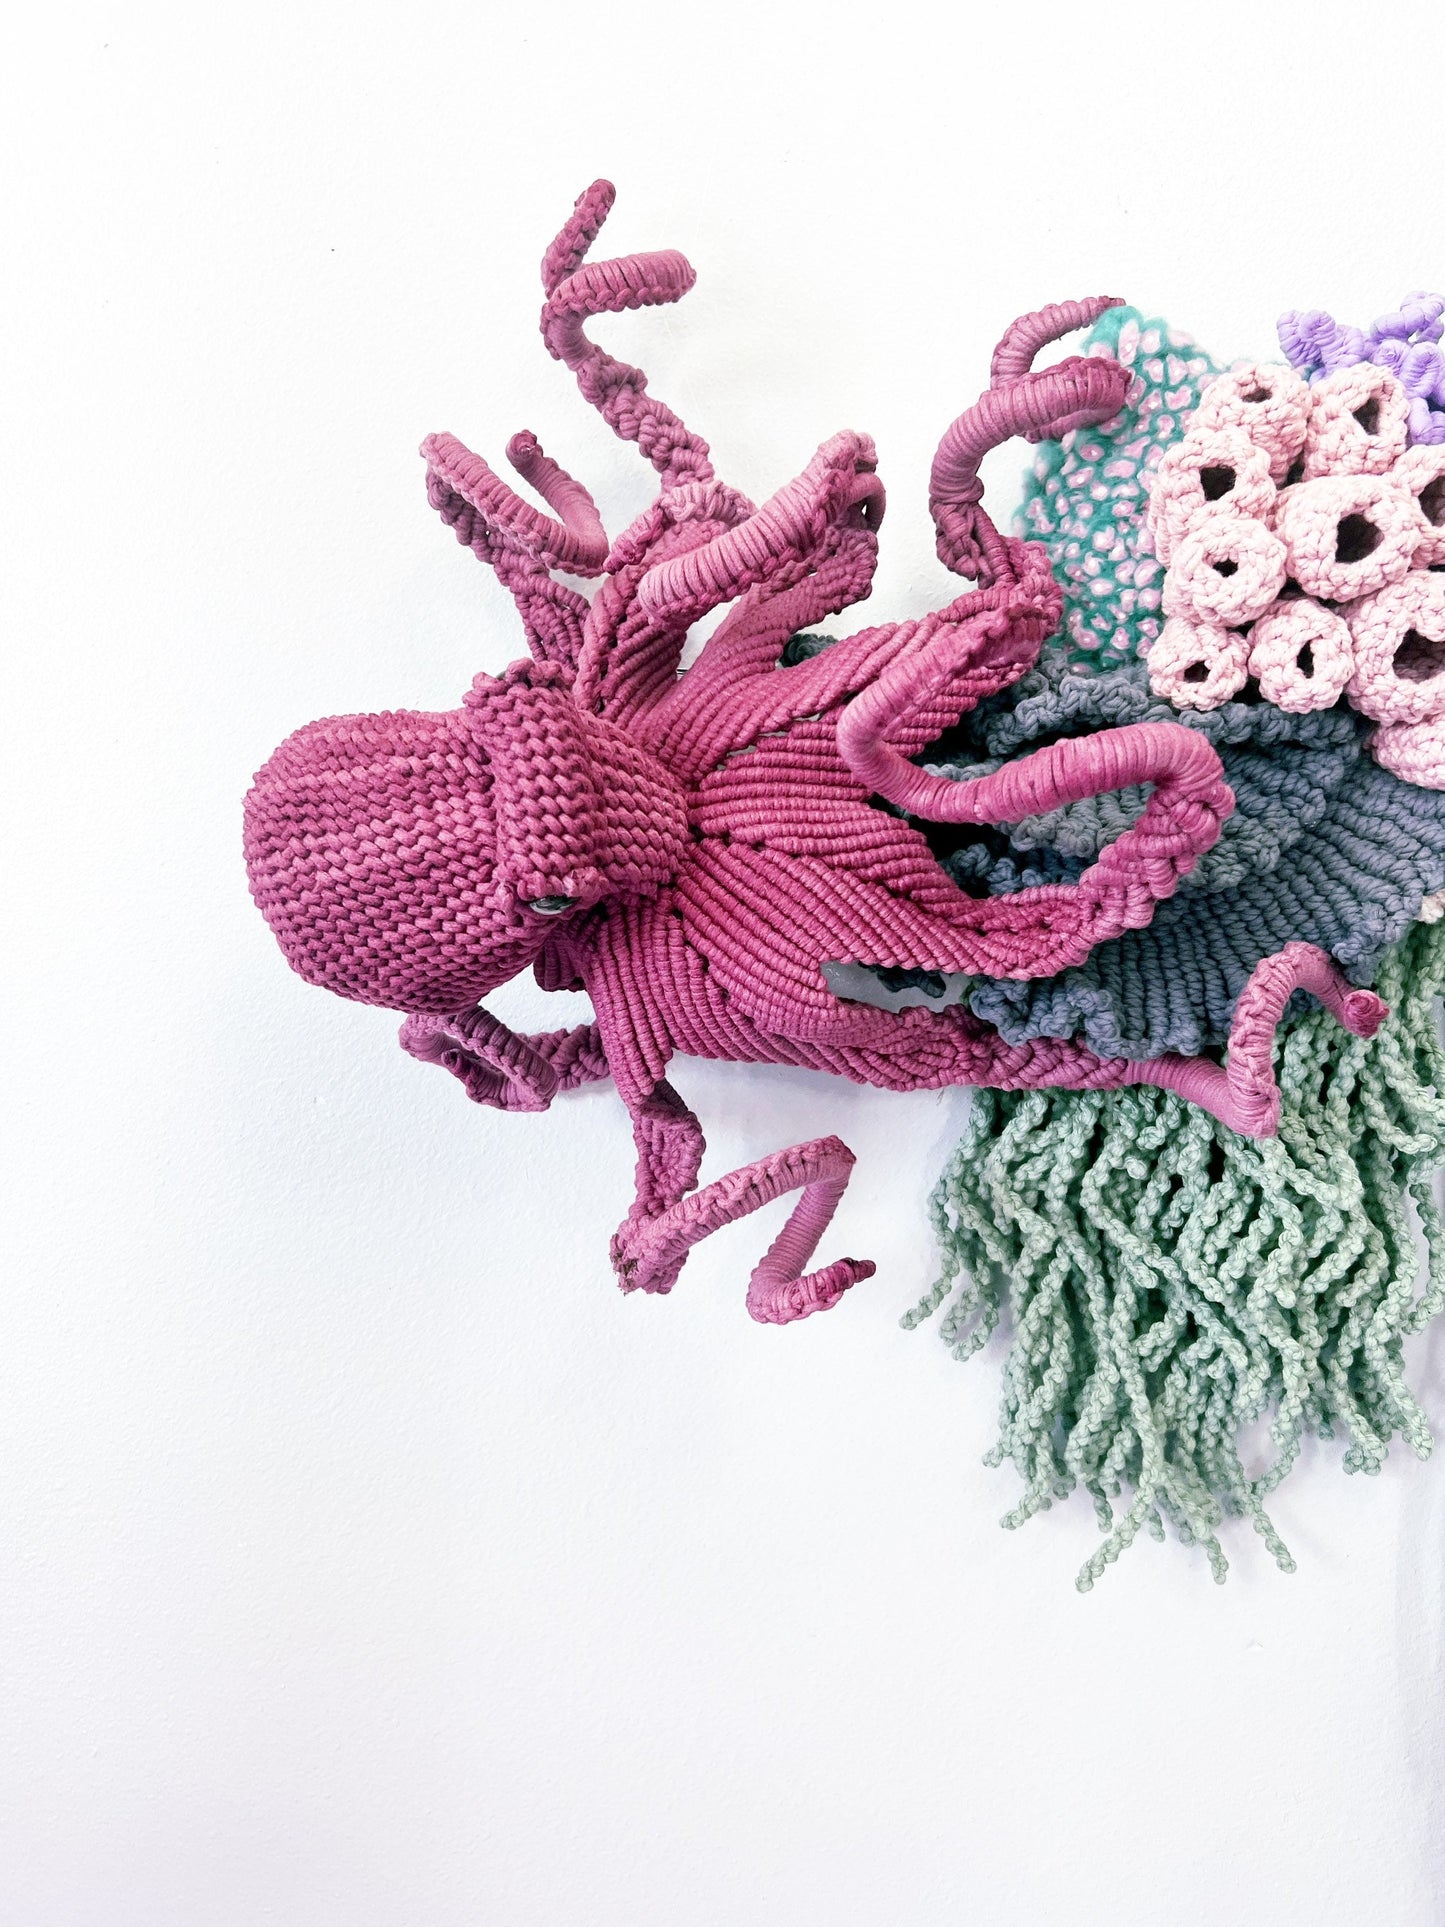 XL Octopus Art/ Seahorse Art/ seahorses